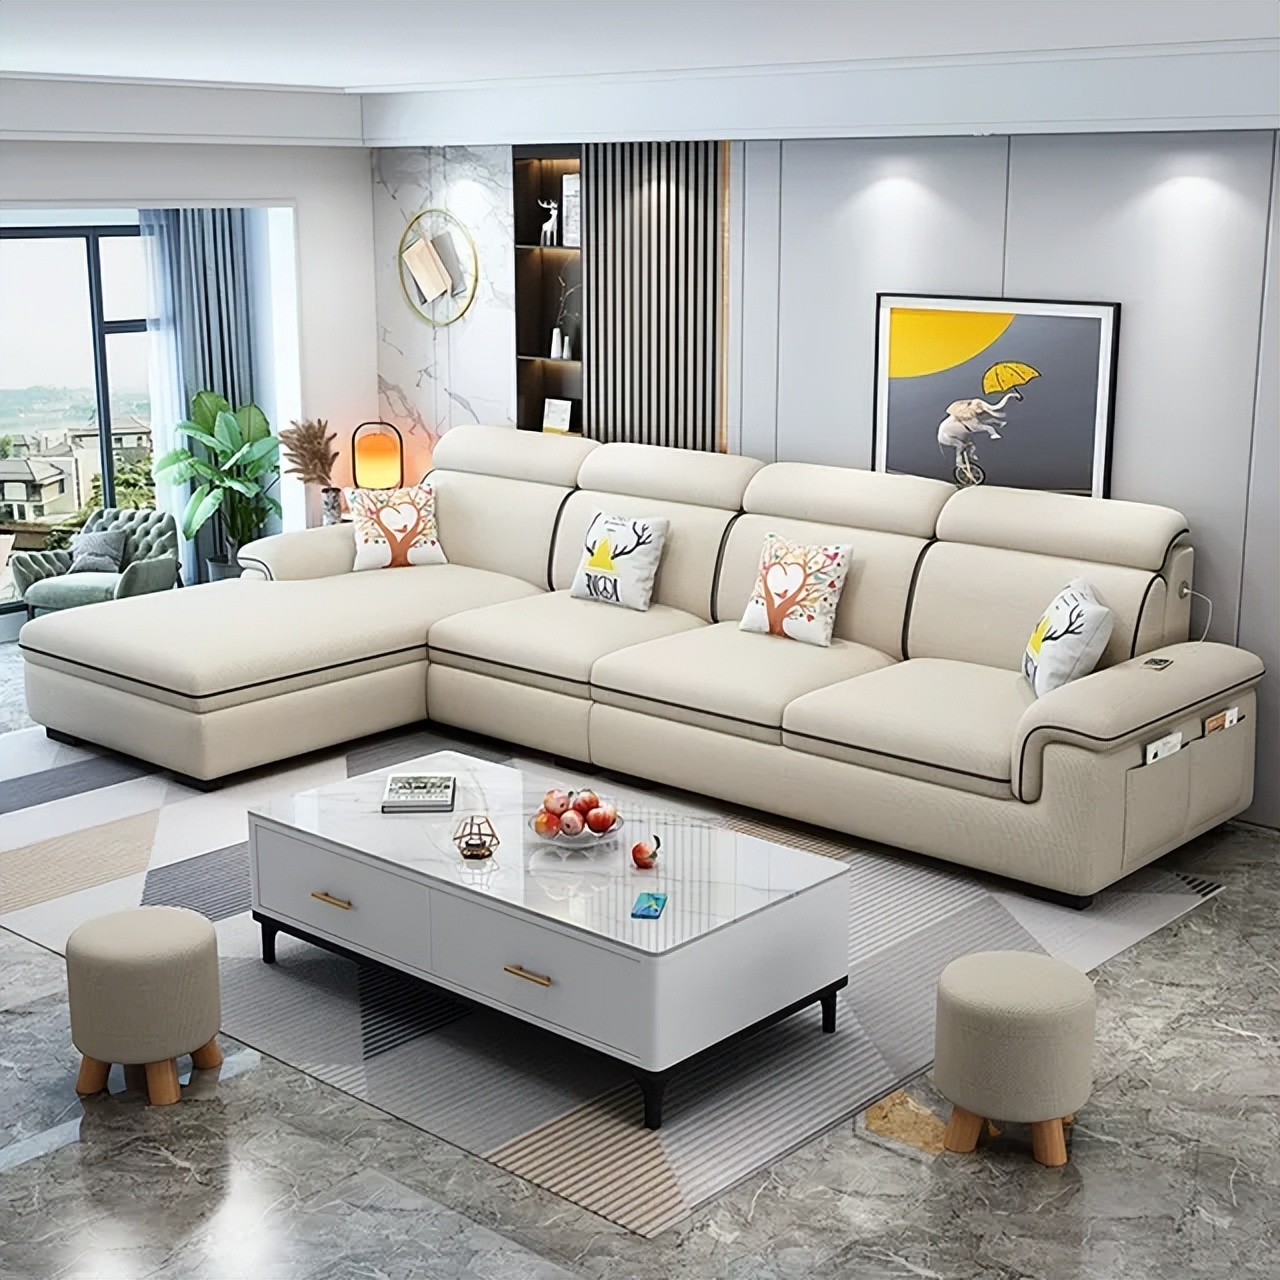 家里选沙发,注重品质还是舒适?3种供你选择